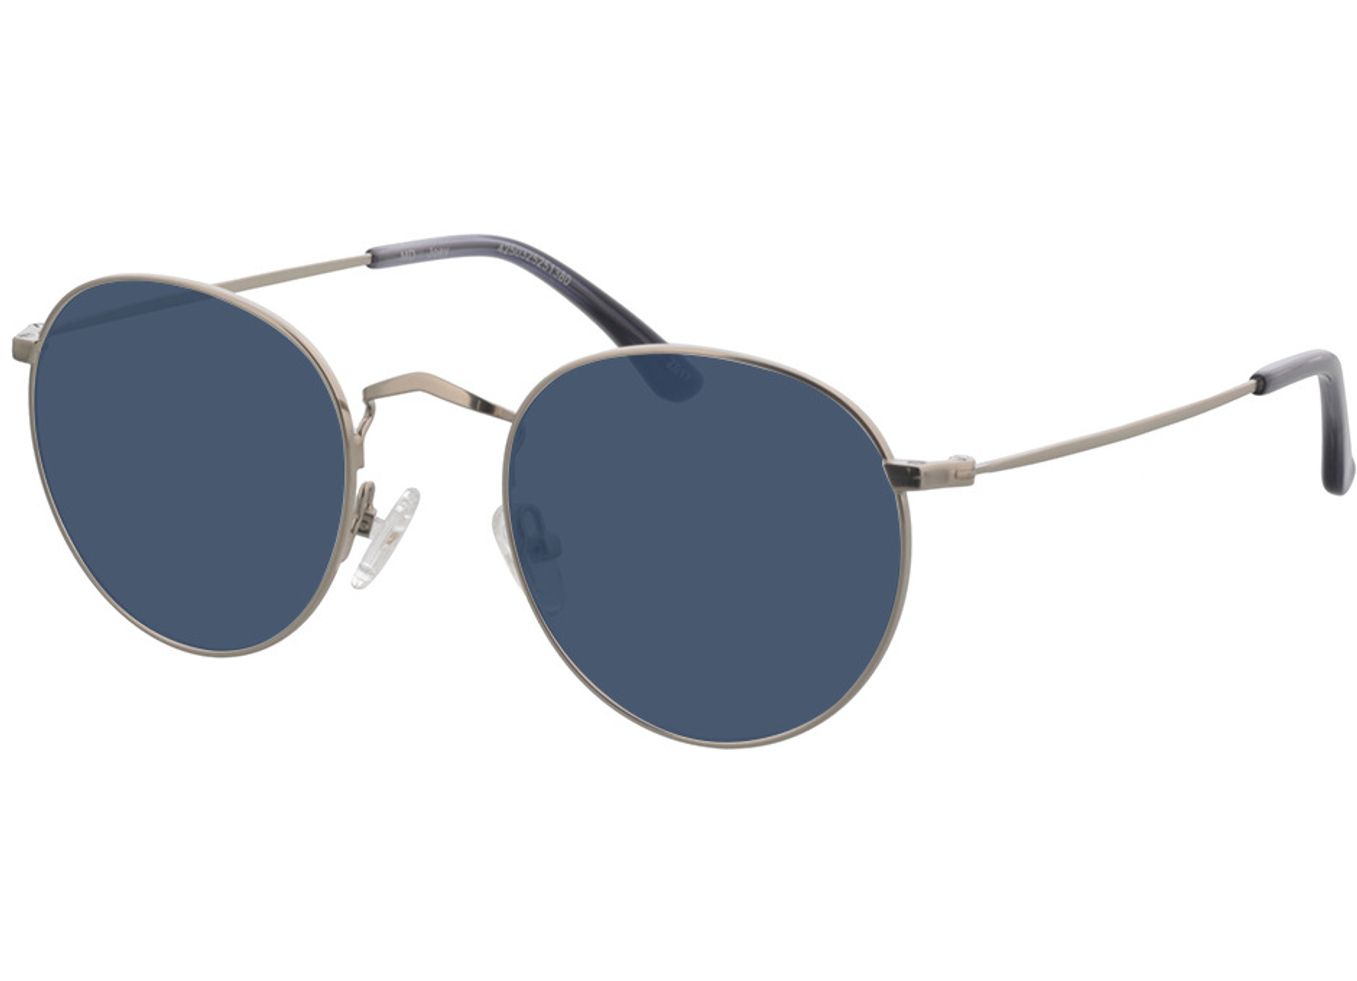 Joey - silber Sonnenbrille mit Sehstärke, Vollrand, Rund von Brille24 Collection